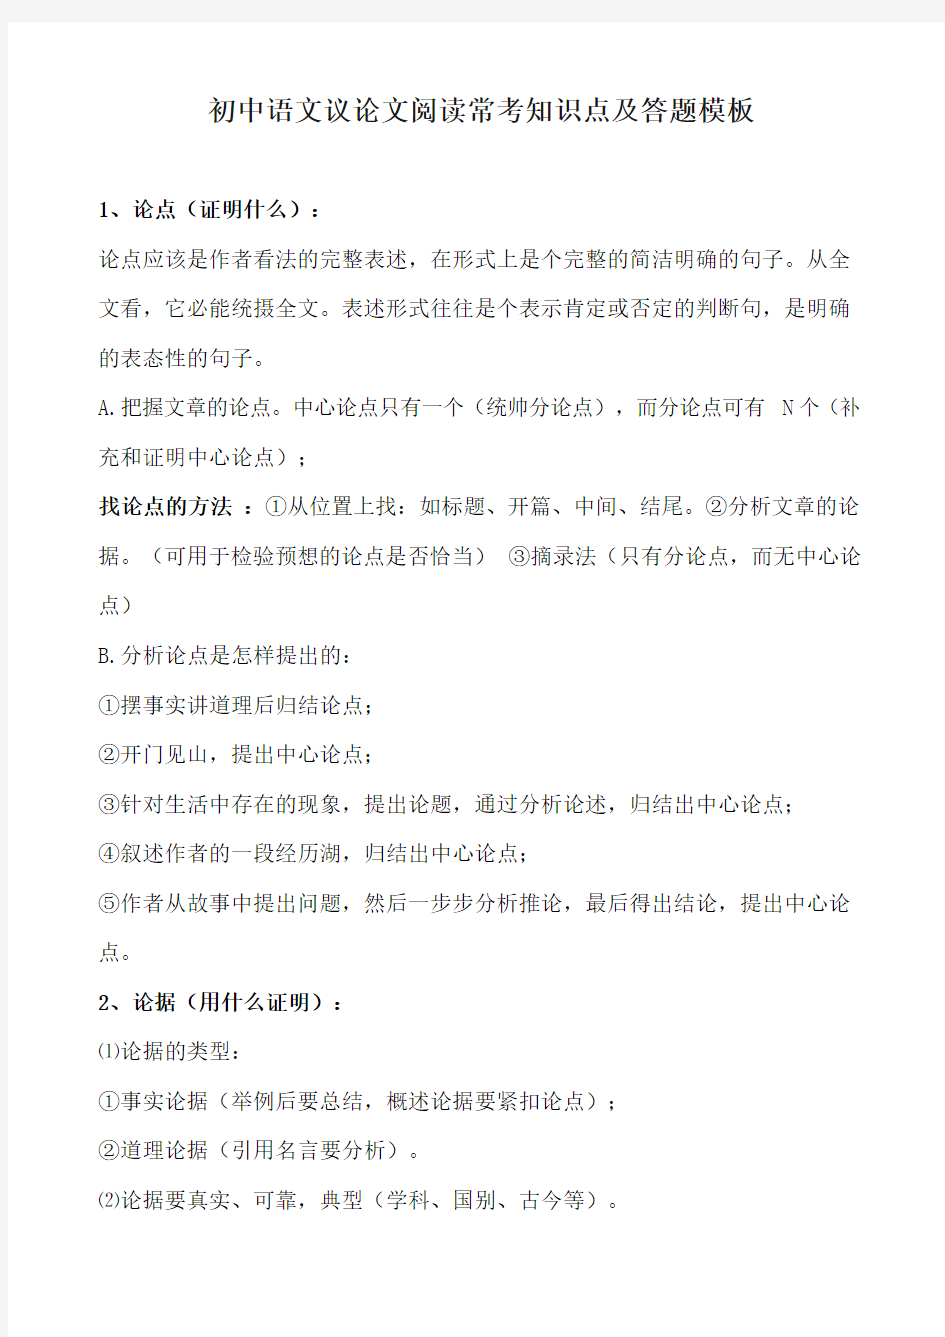 初中语文议论文阅读常考知识点及答题模板